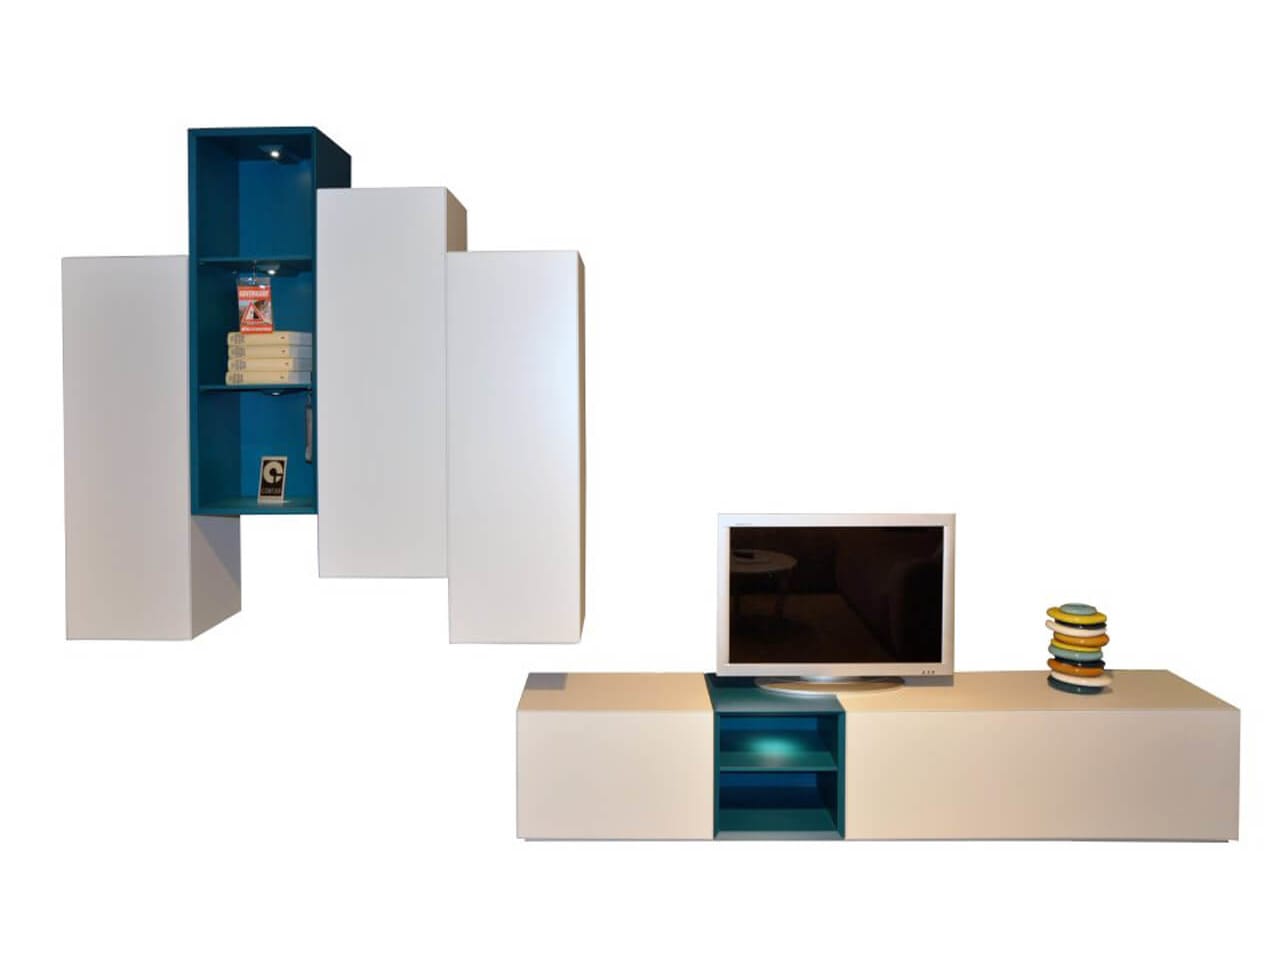 Wohnand Contur 5600 in weiß mit Absetzungen in blau - bestehend aus TV-Lowboard und Hängeschränken - Ausstellungsstück im Abverkauf